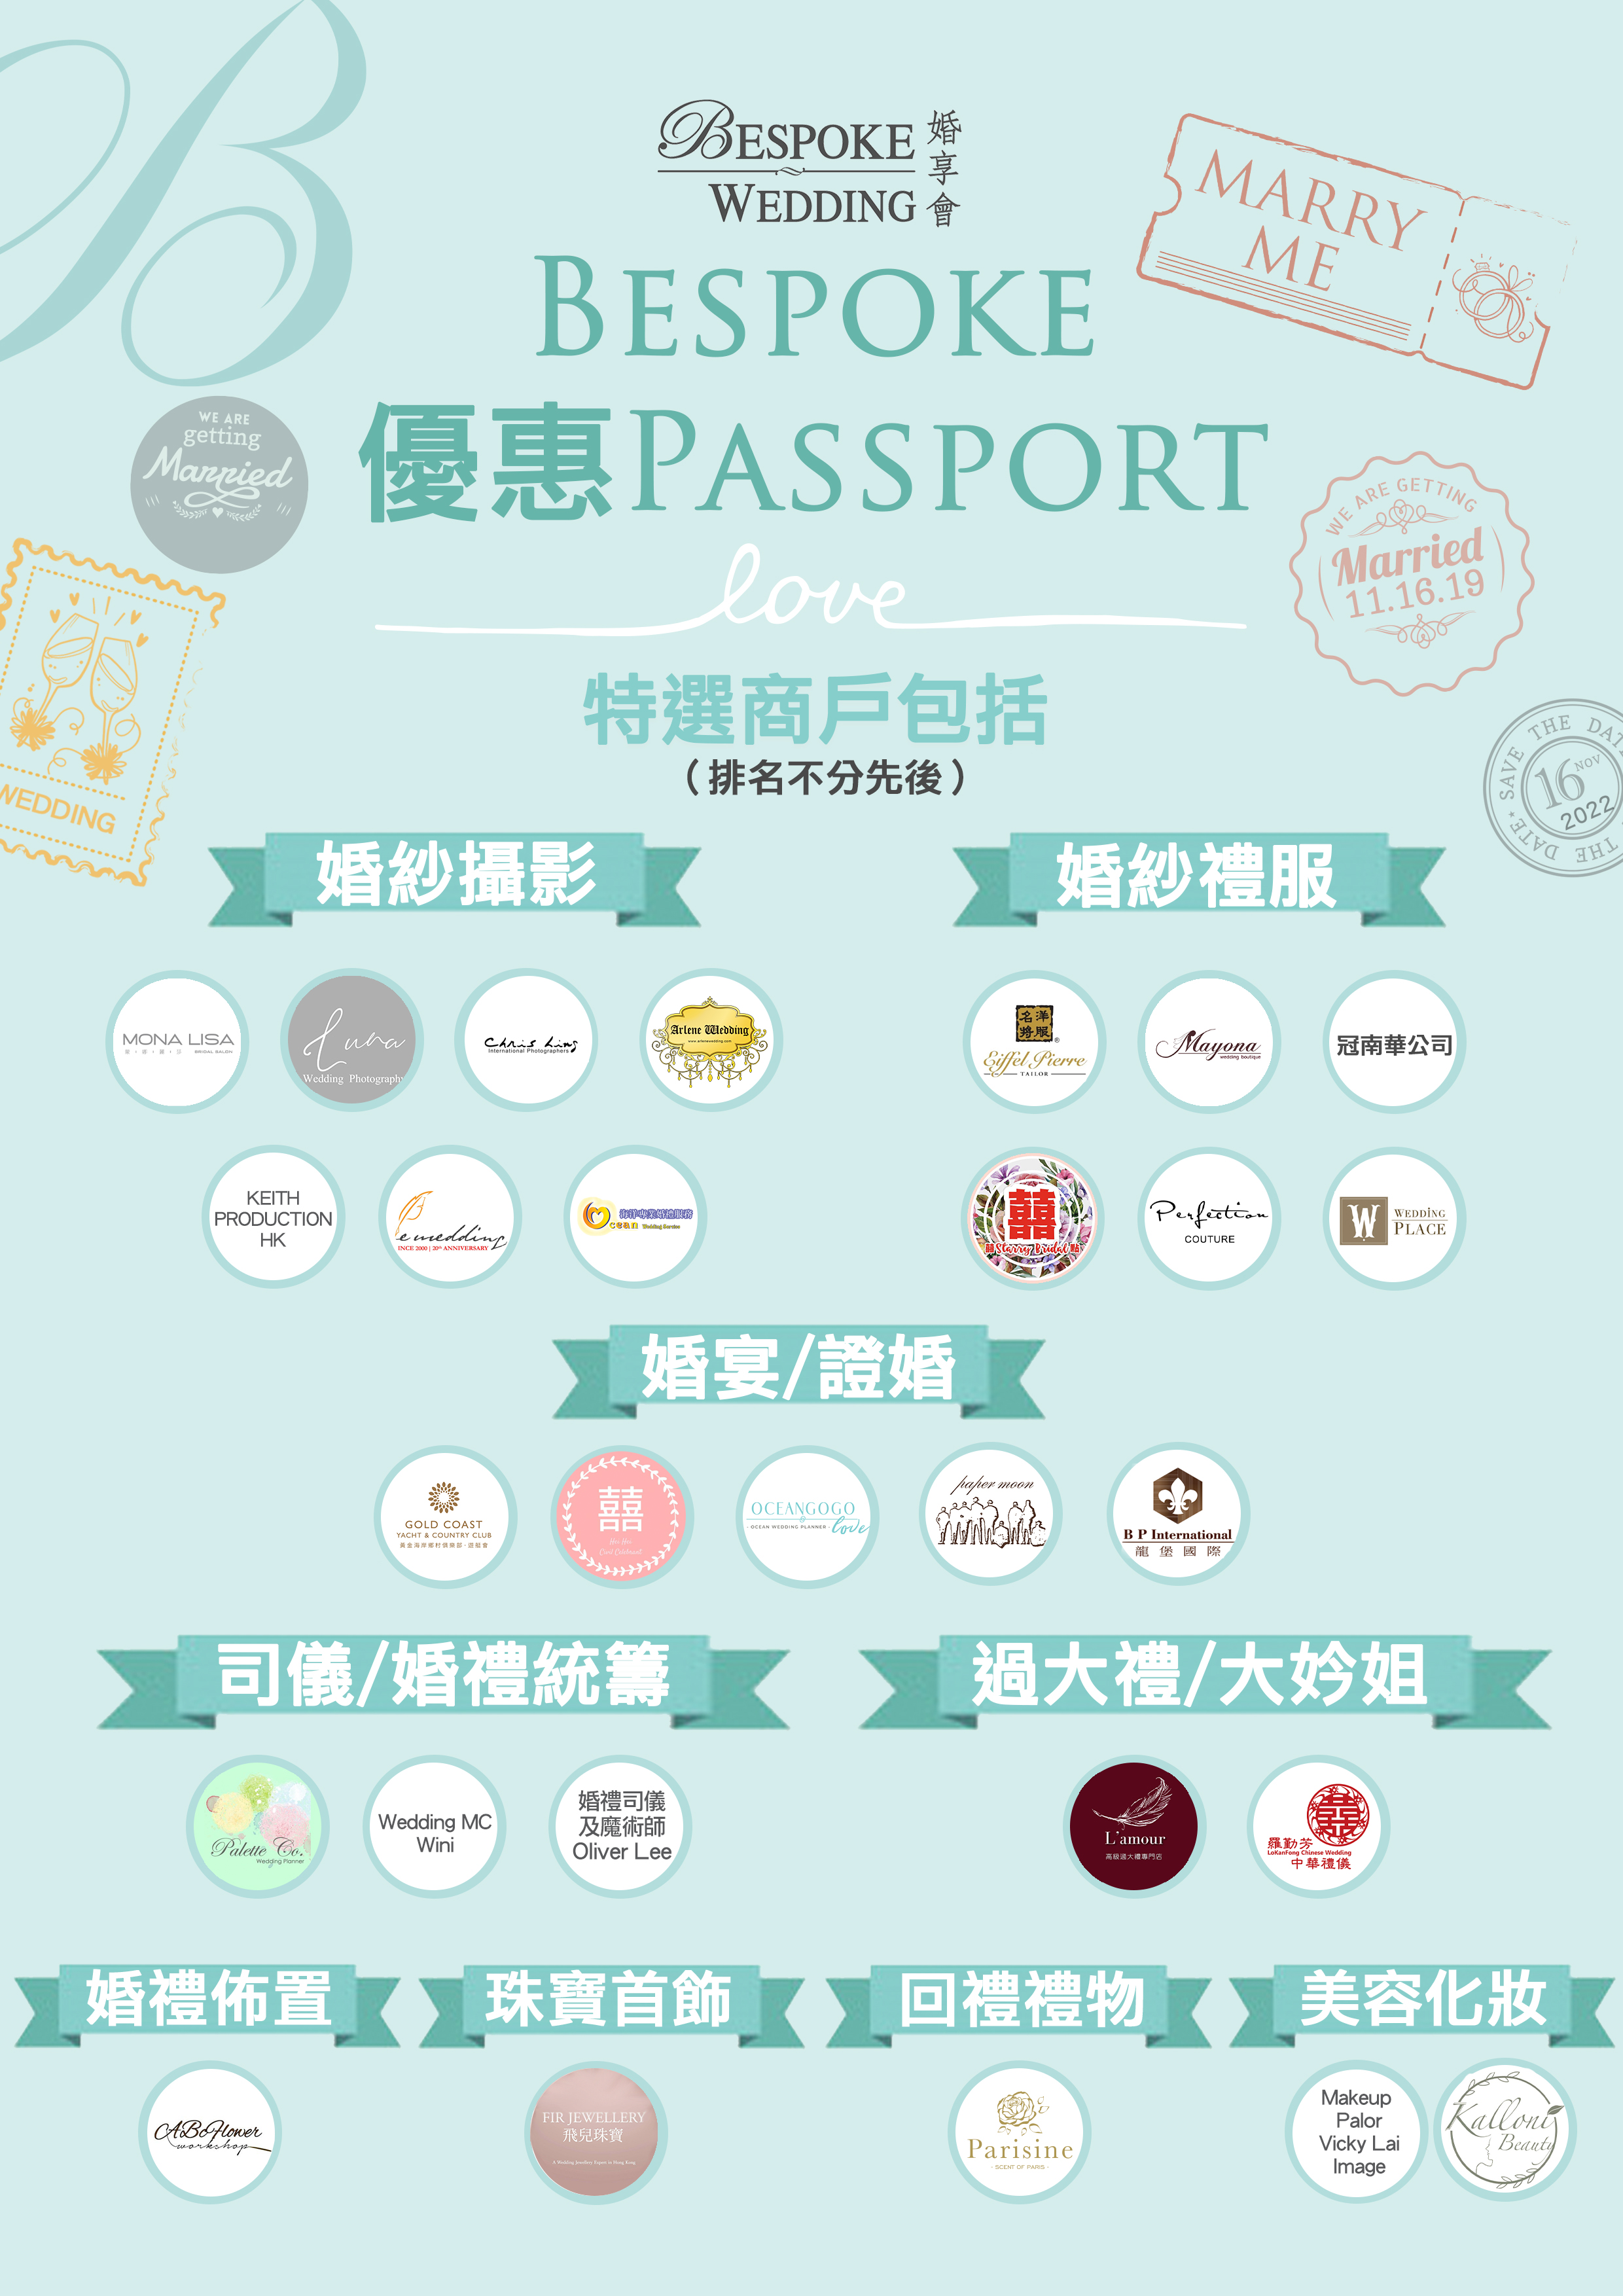 bespoke passport